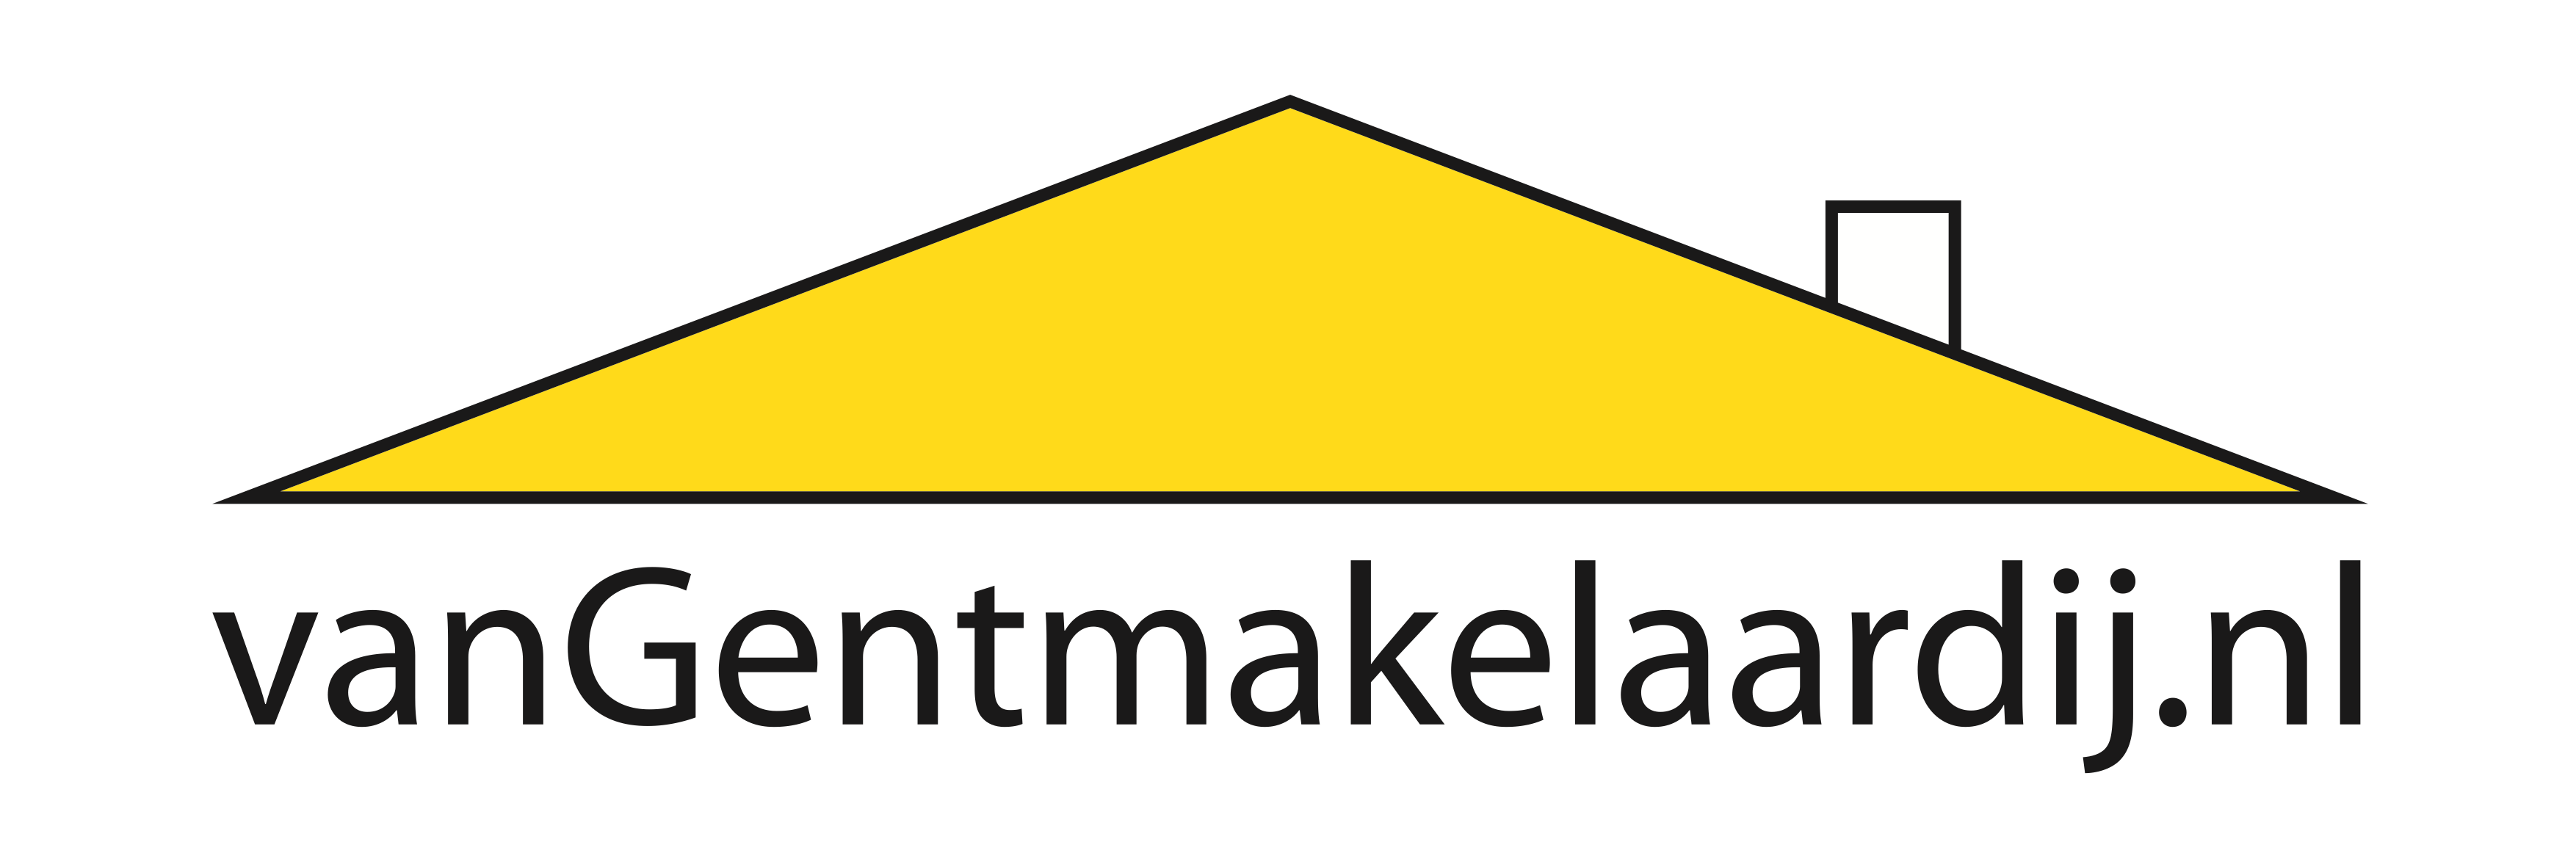 Logo Van Gent Makelaardij